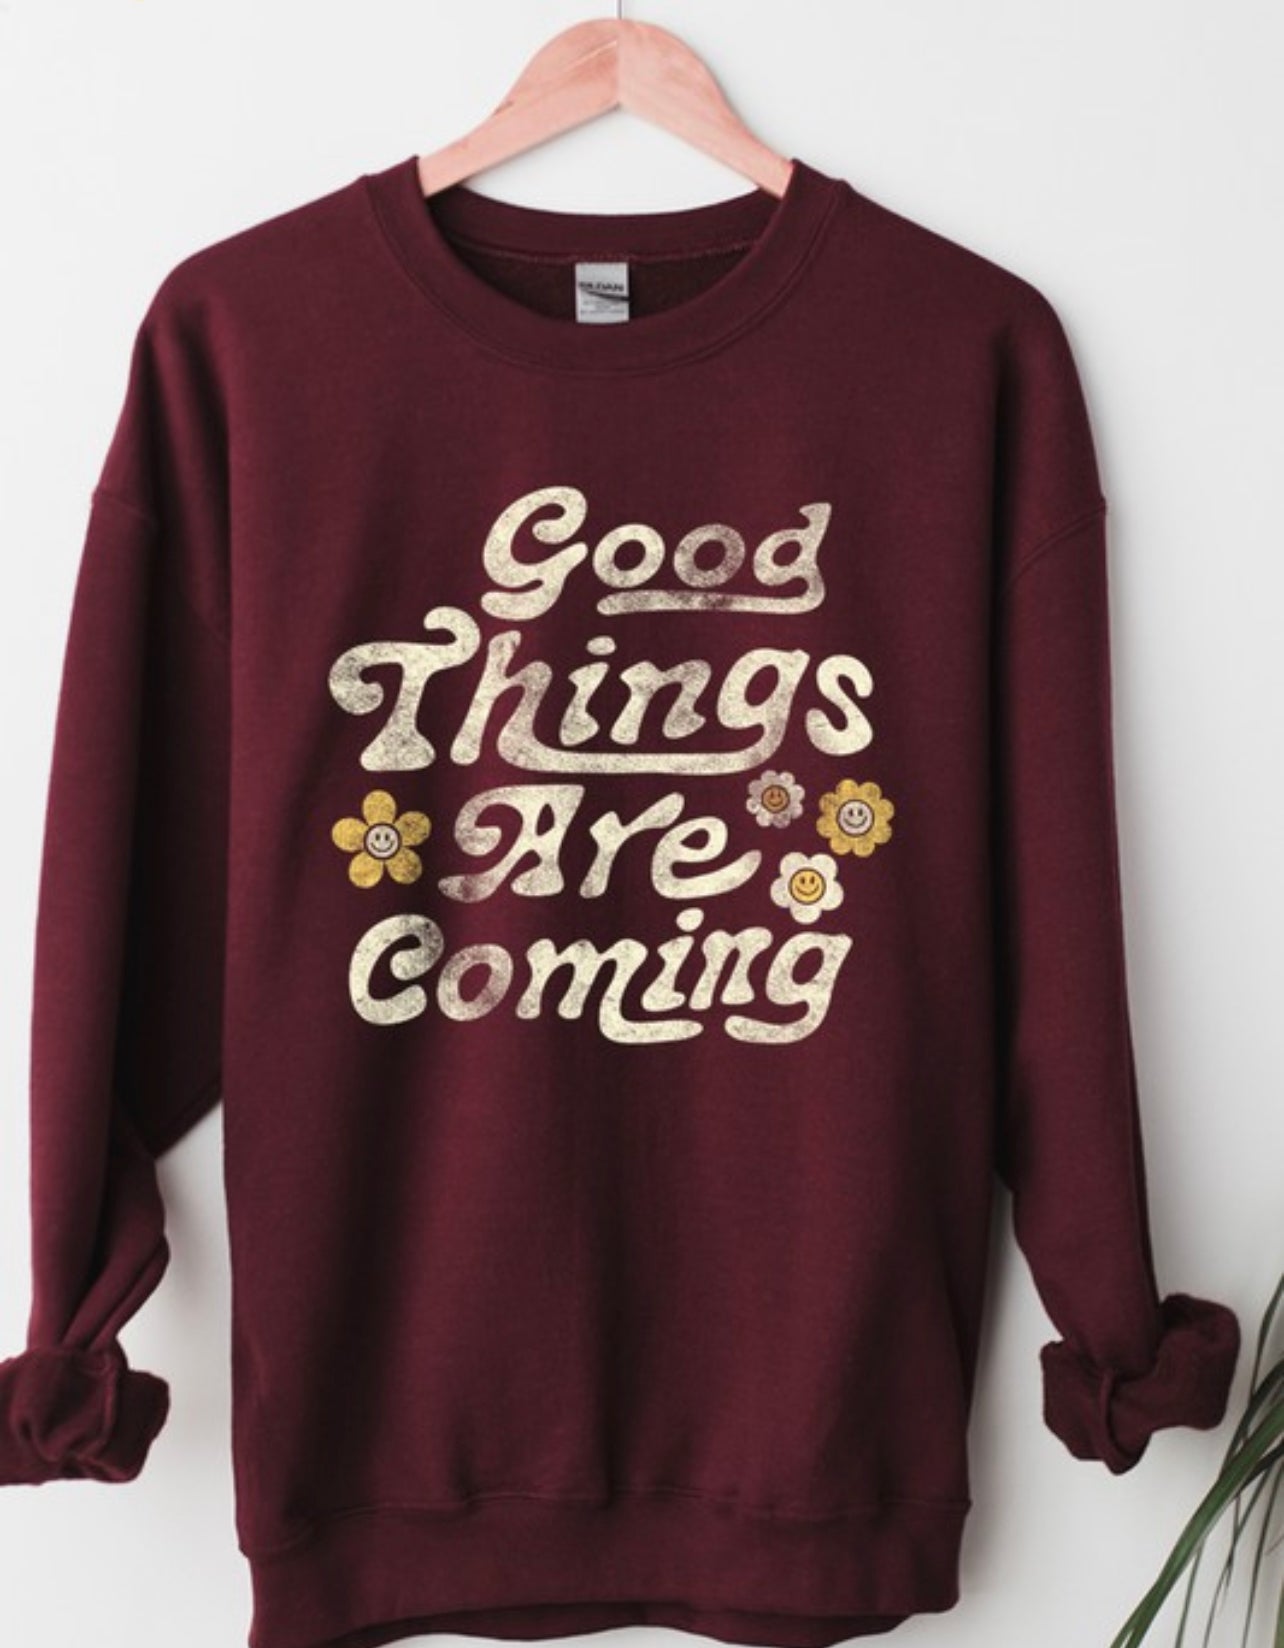 Good Things Coming Sweatshirt